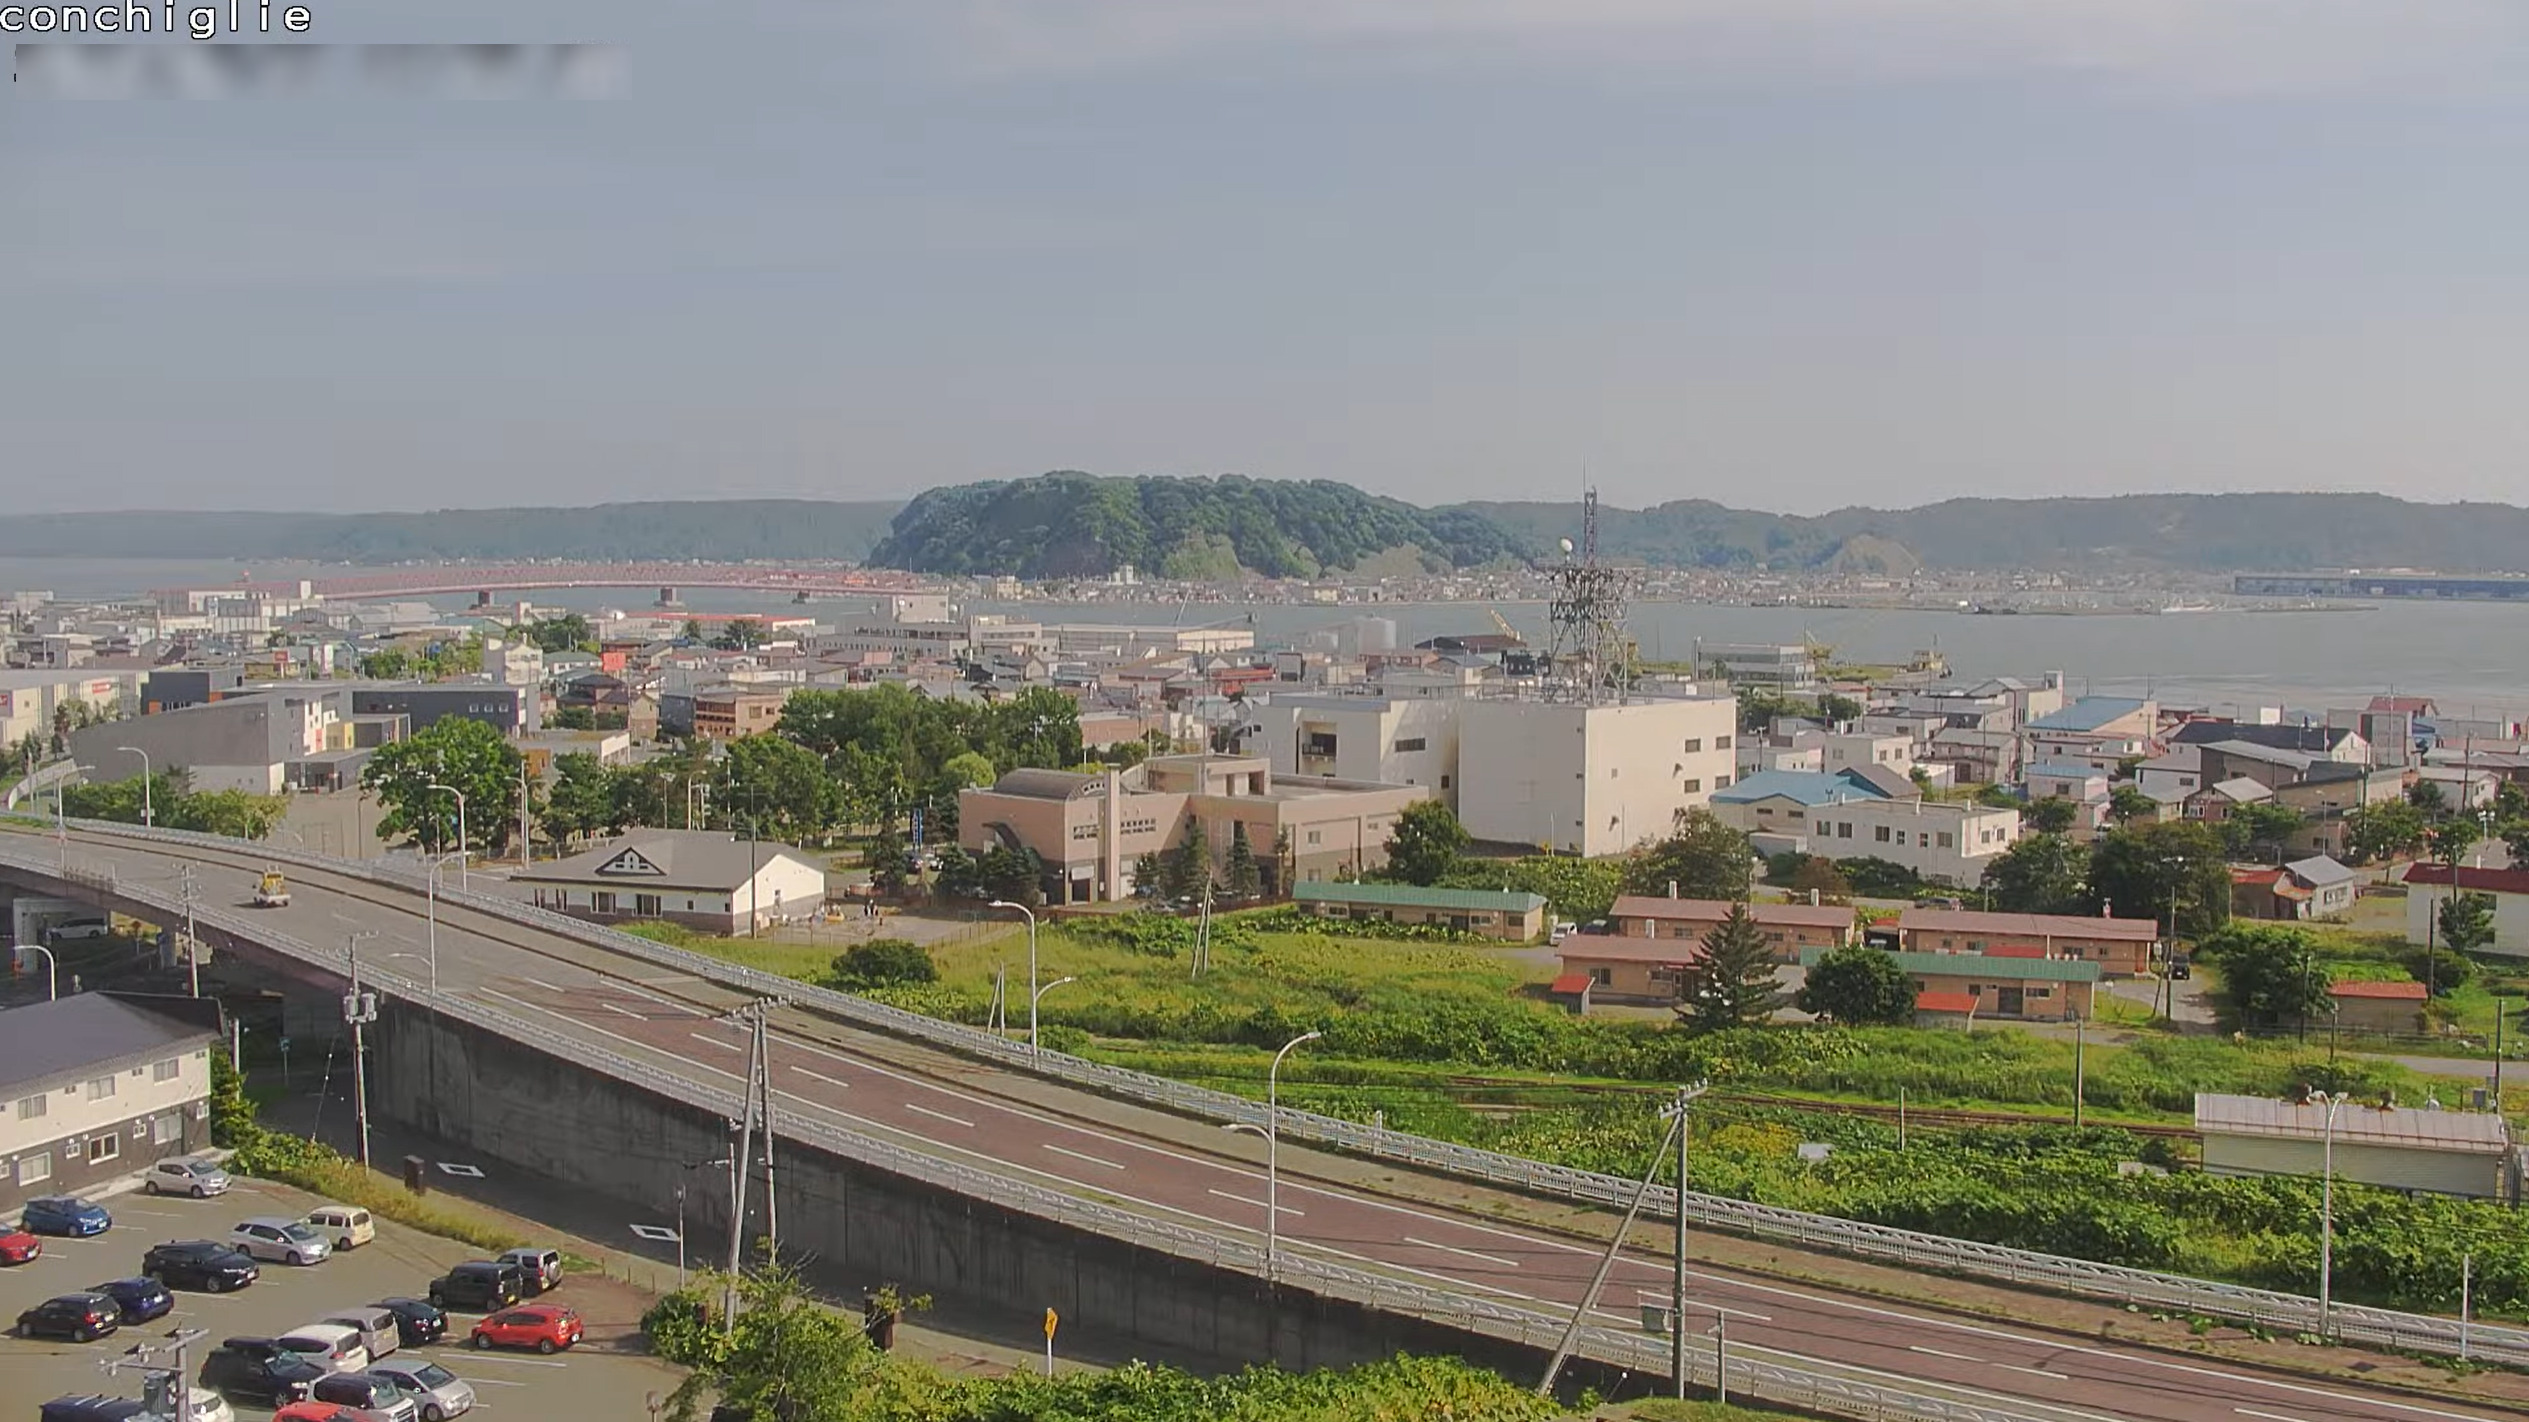 厚岸味覚ターミナルコンキリエライブカメラ(北海道厚岸町住の江)